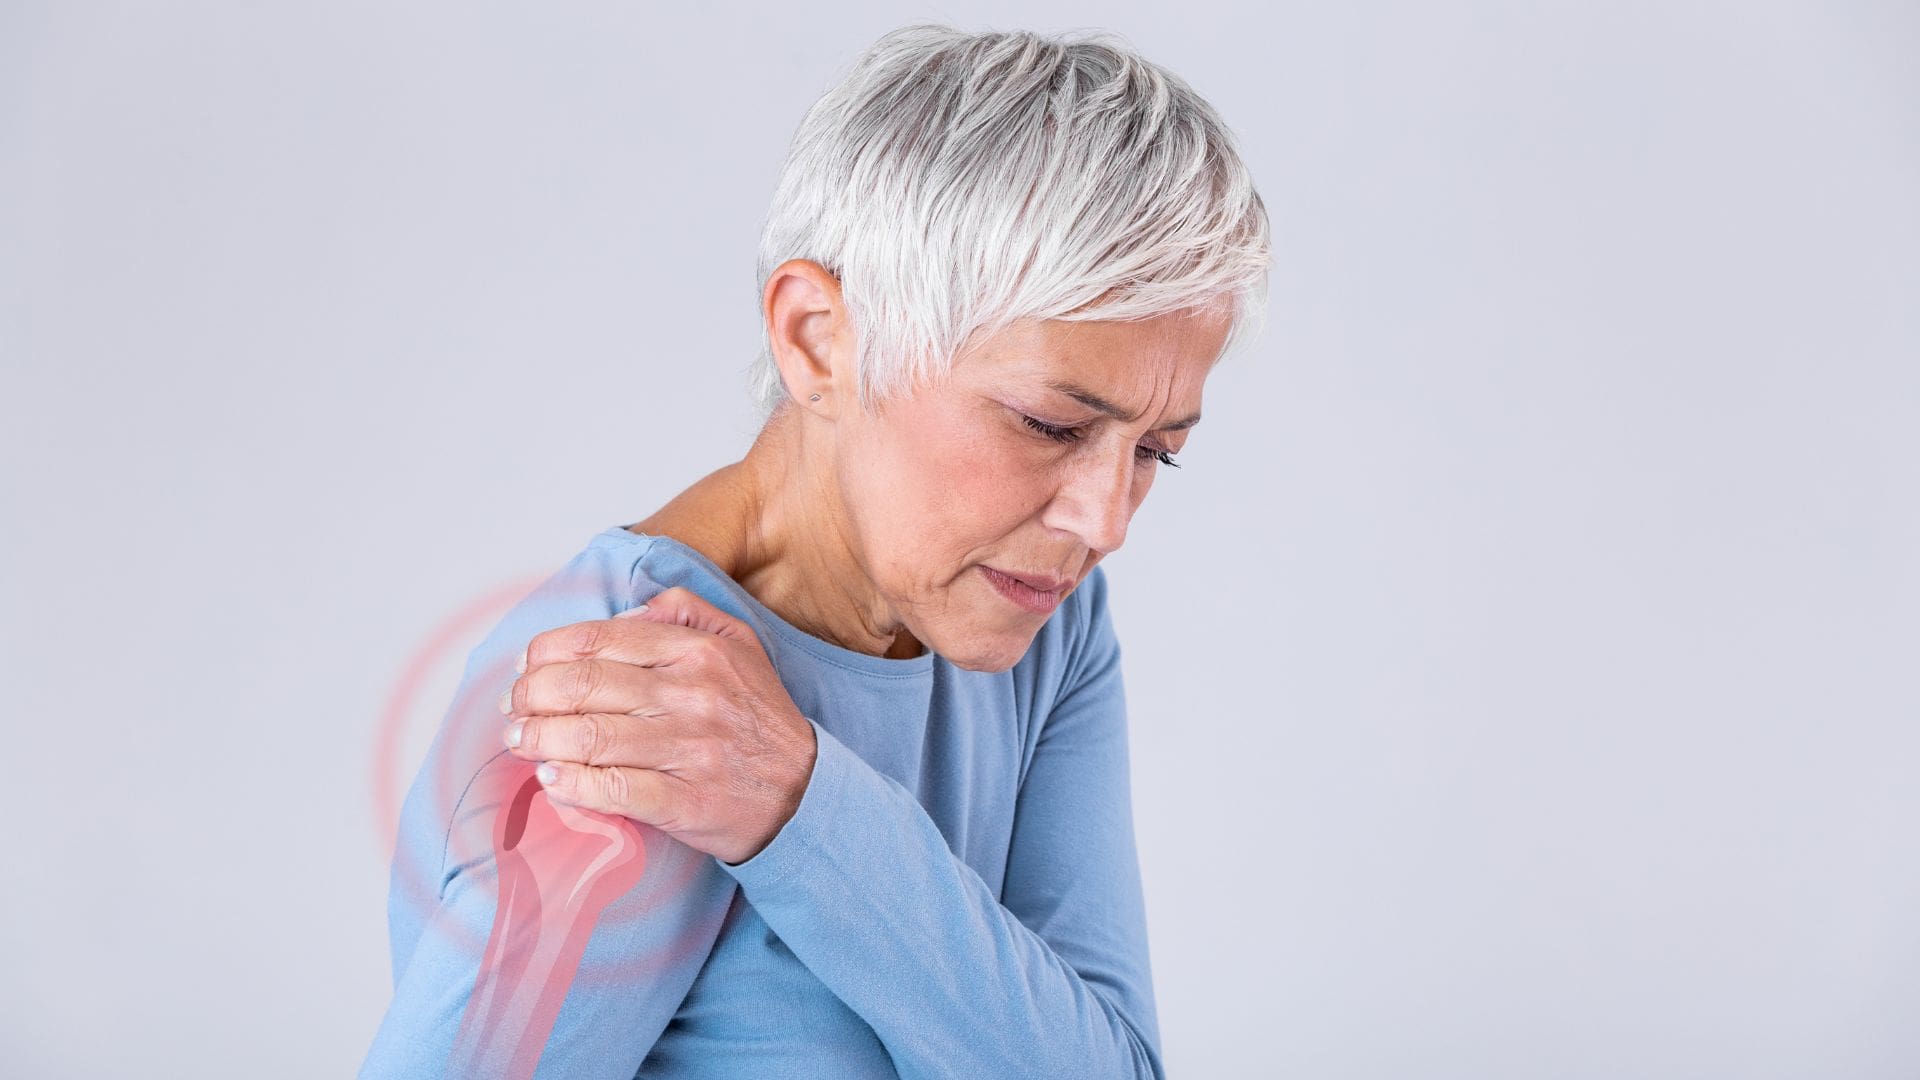 אישה סובלת מכאב בכתף ימין: כתבה על מקור הכאב ומה עליכם לעשות עכשיו 